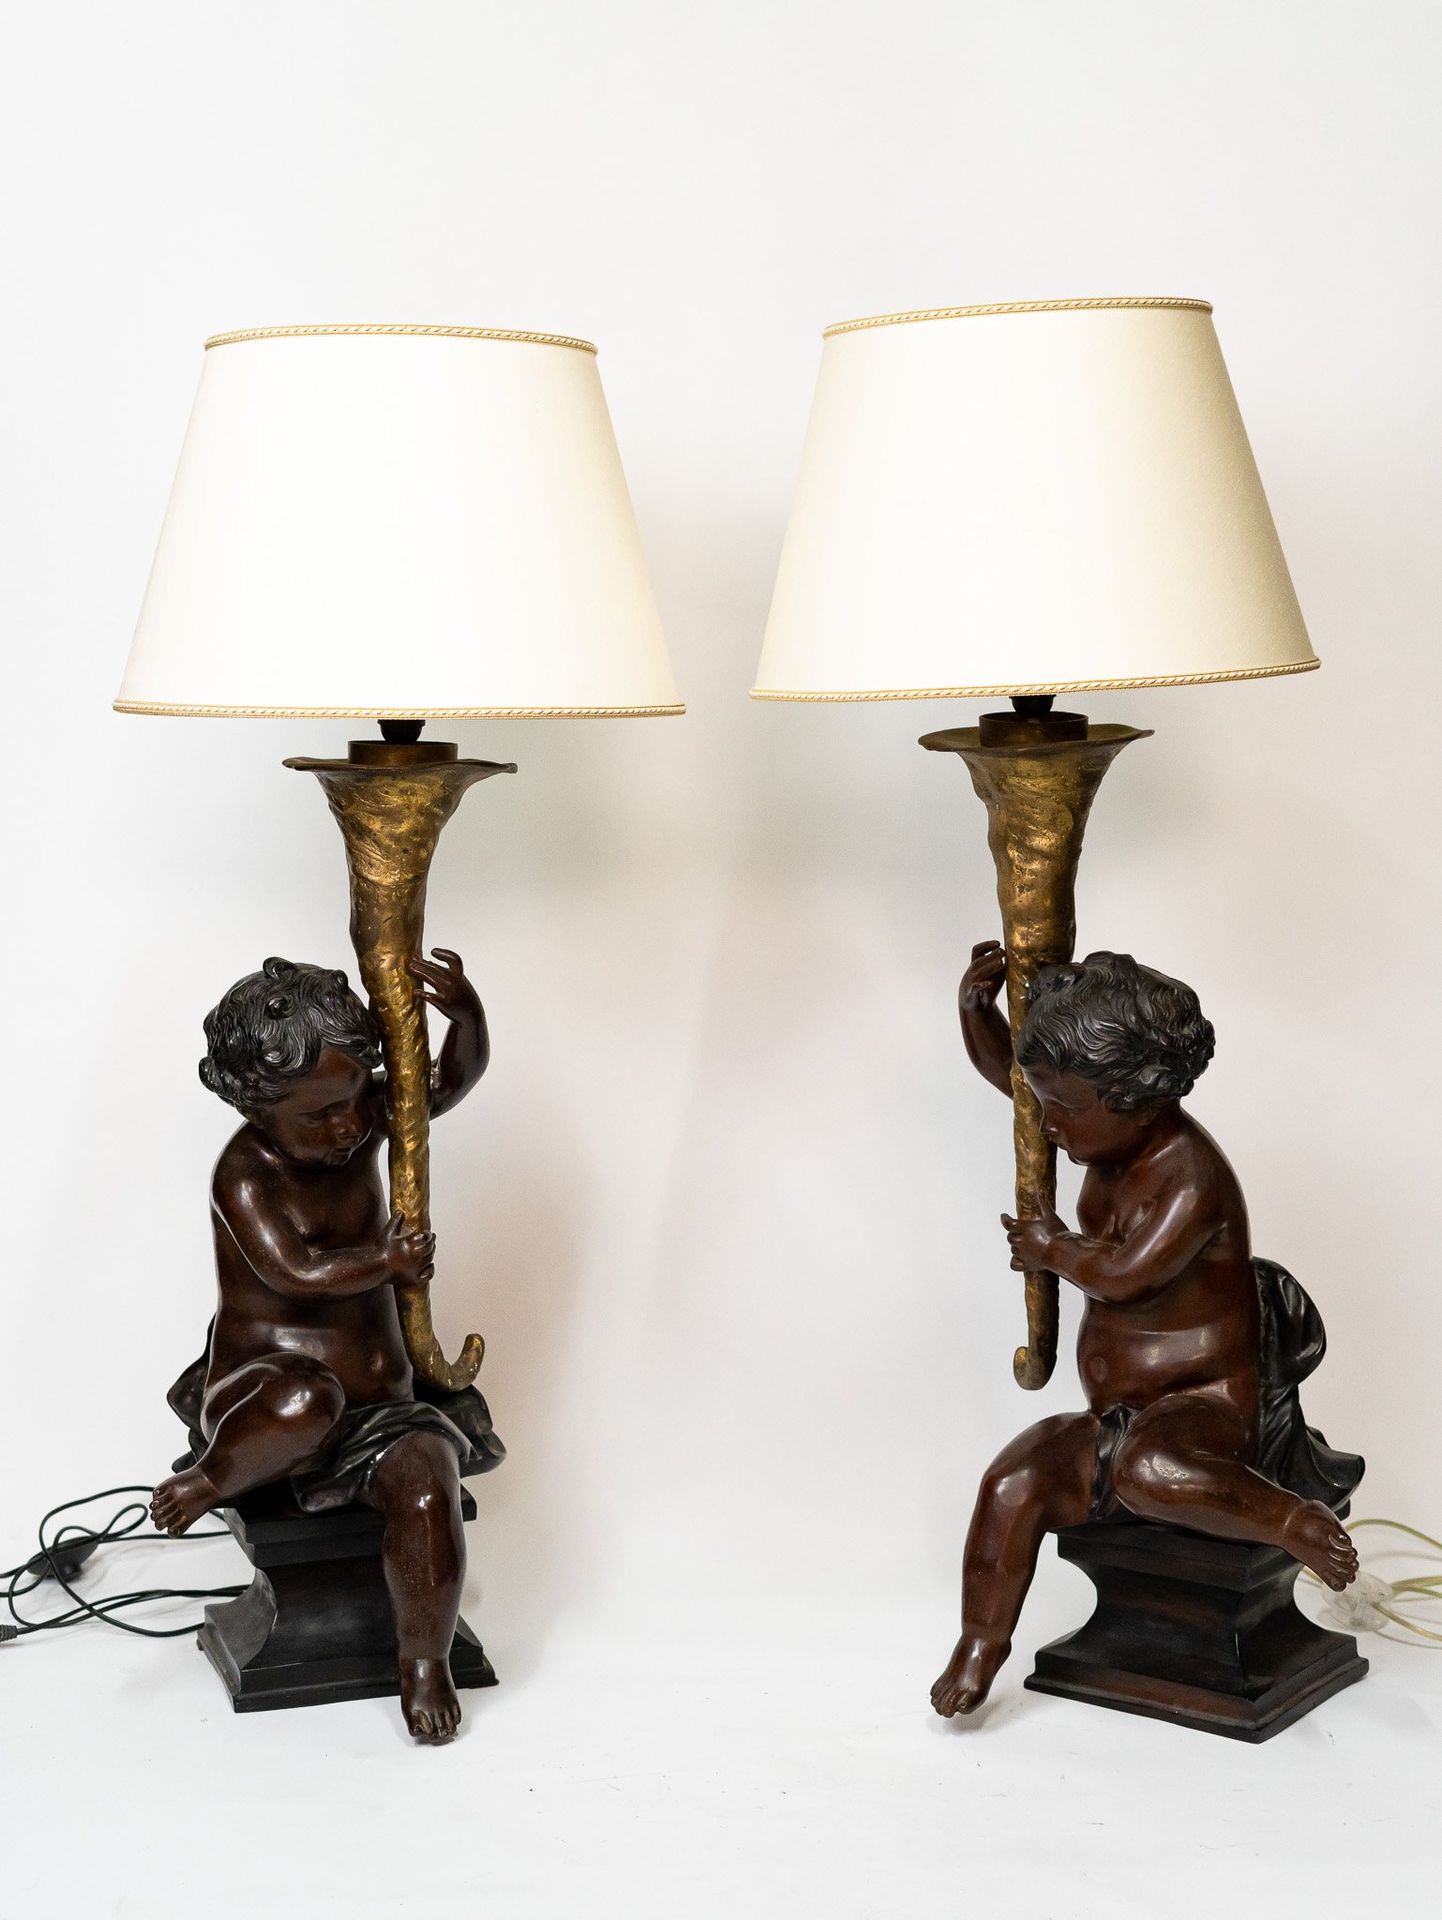 Null par de lámparas de bronce, putti 70x35x30cm siglo XX